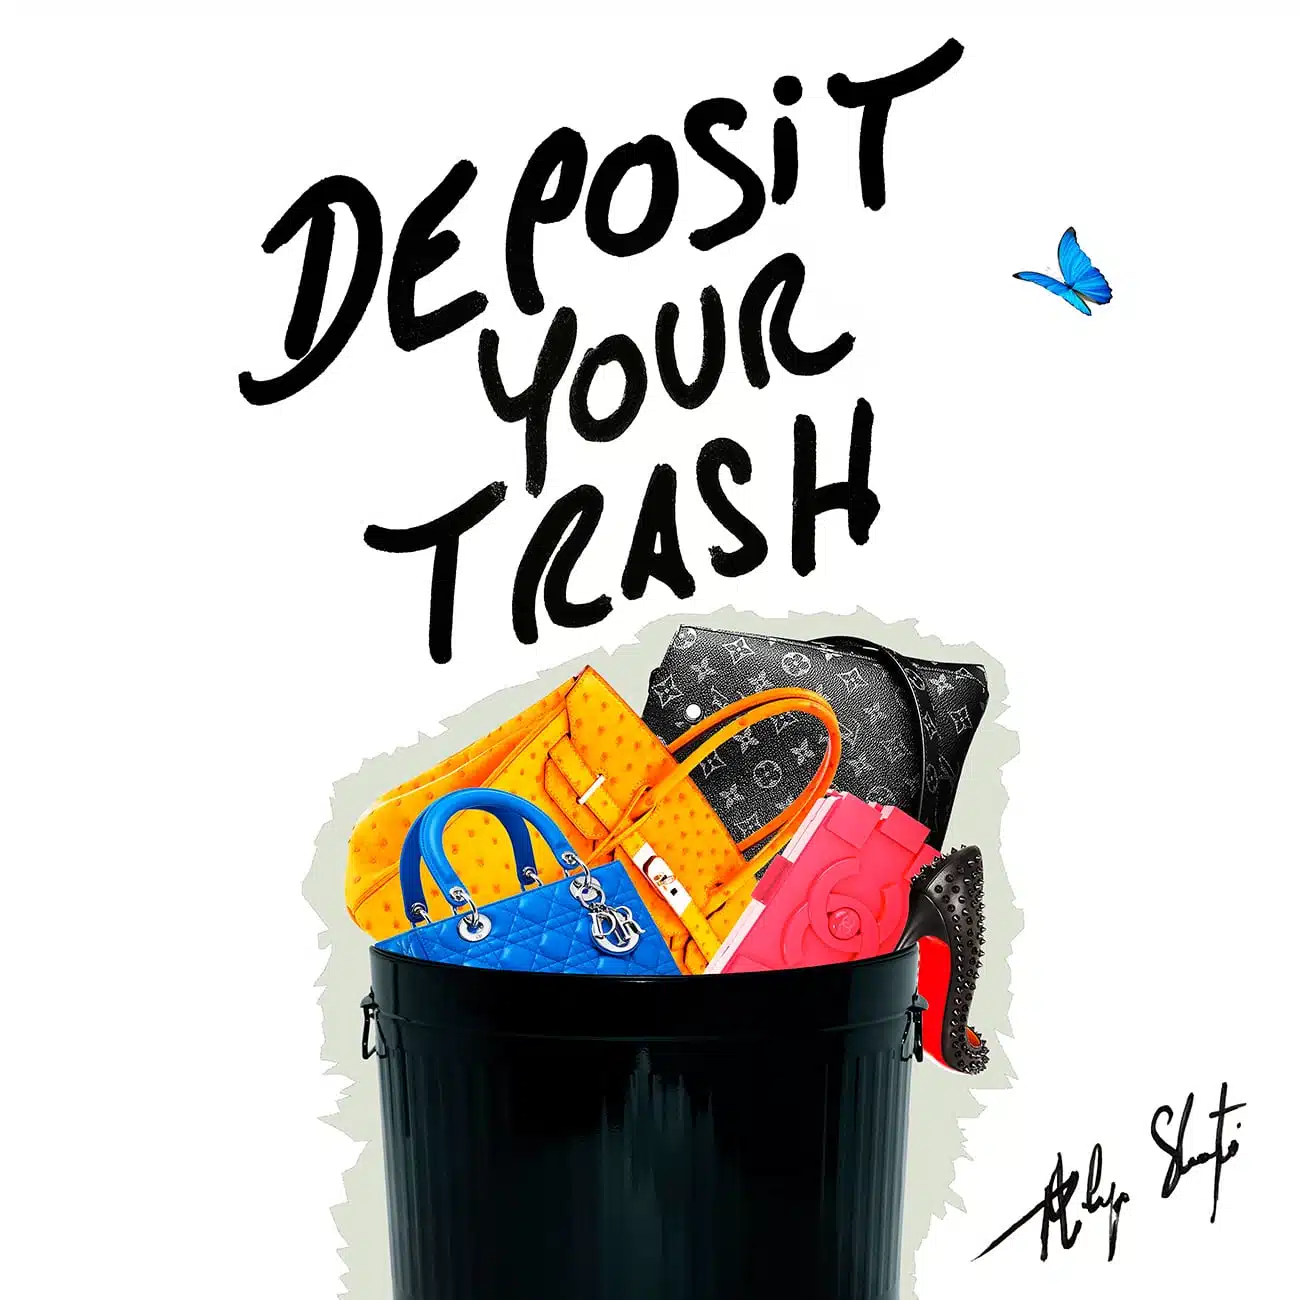 Deposit Your Trash